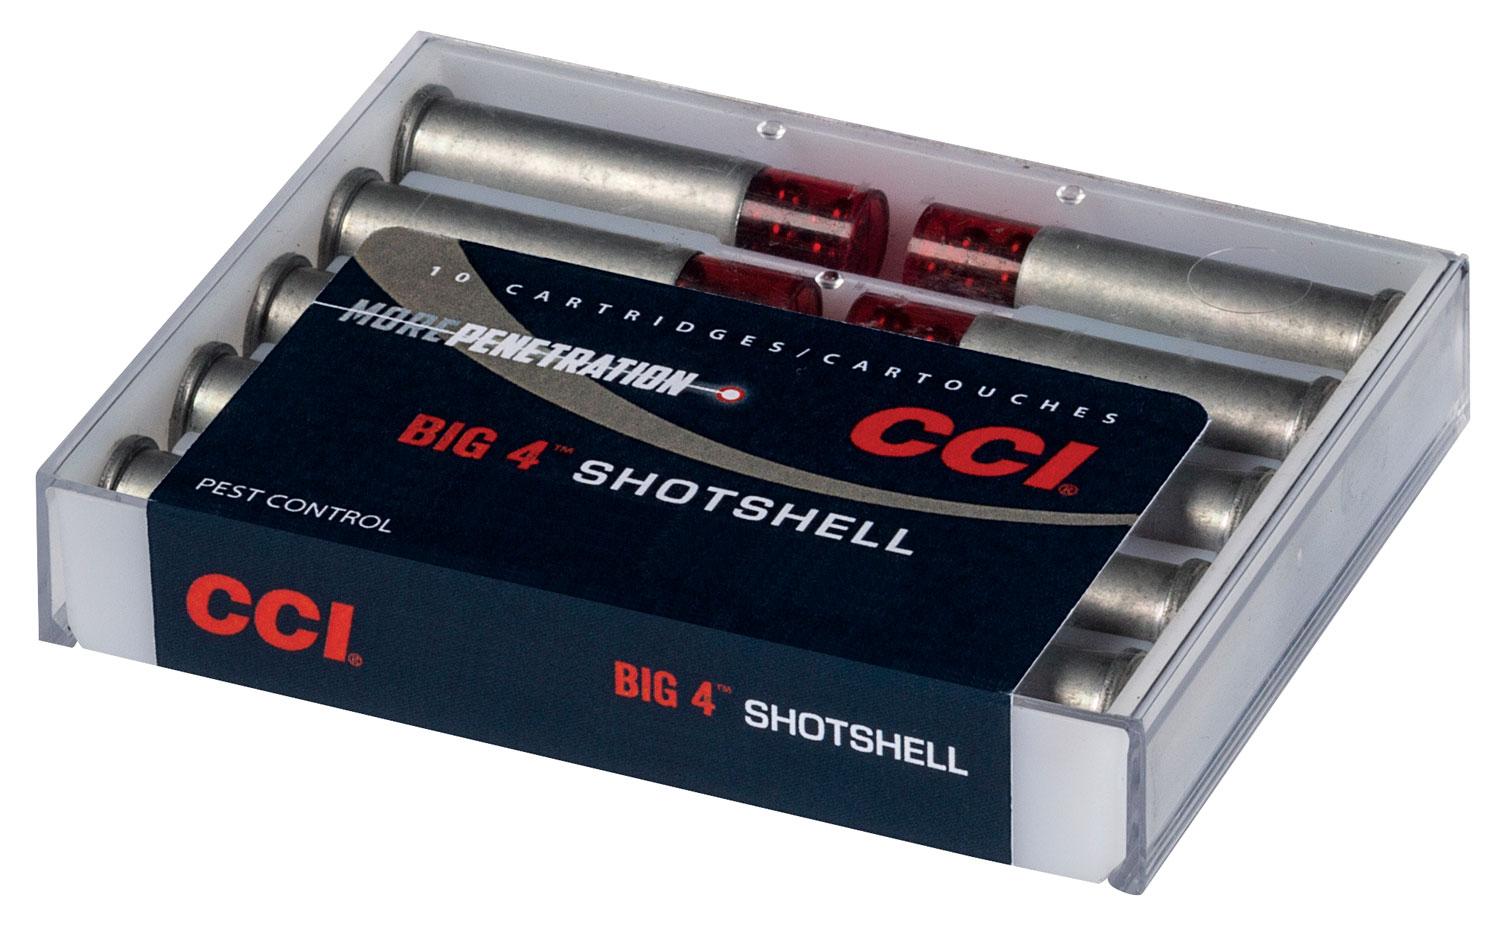  Cci 3718cc Big 4 Shotshell 44 S & W Spl, 44 Rem Mag 110 Gr 1000 Fps Shotshell # 4 Shot 10 Bx/20 Cs